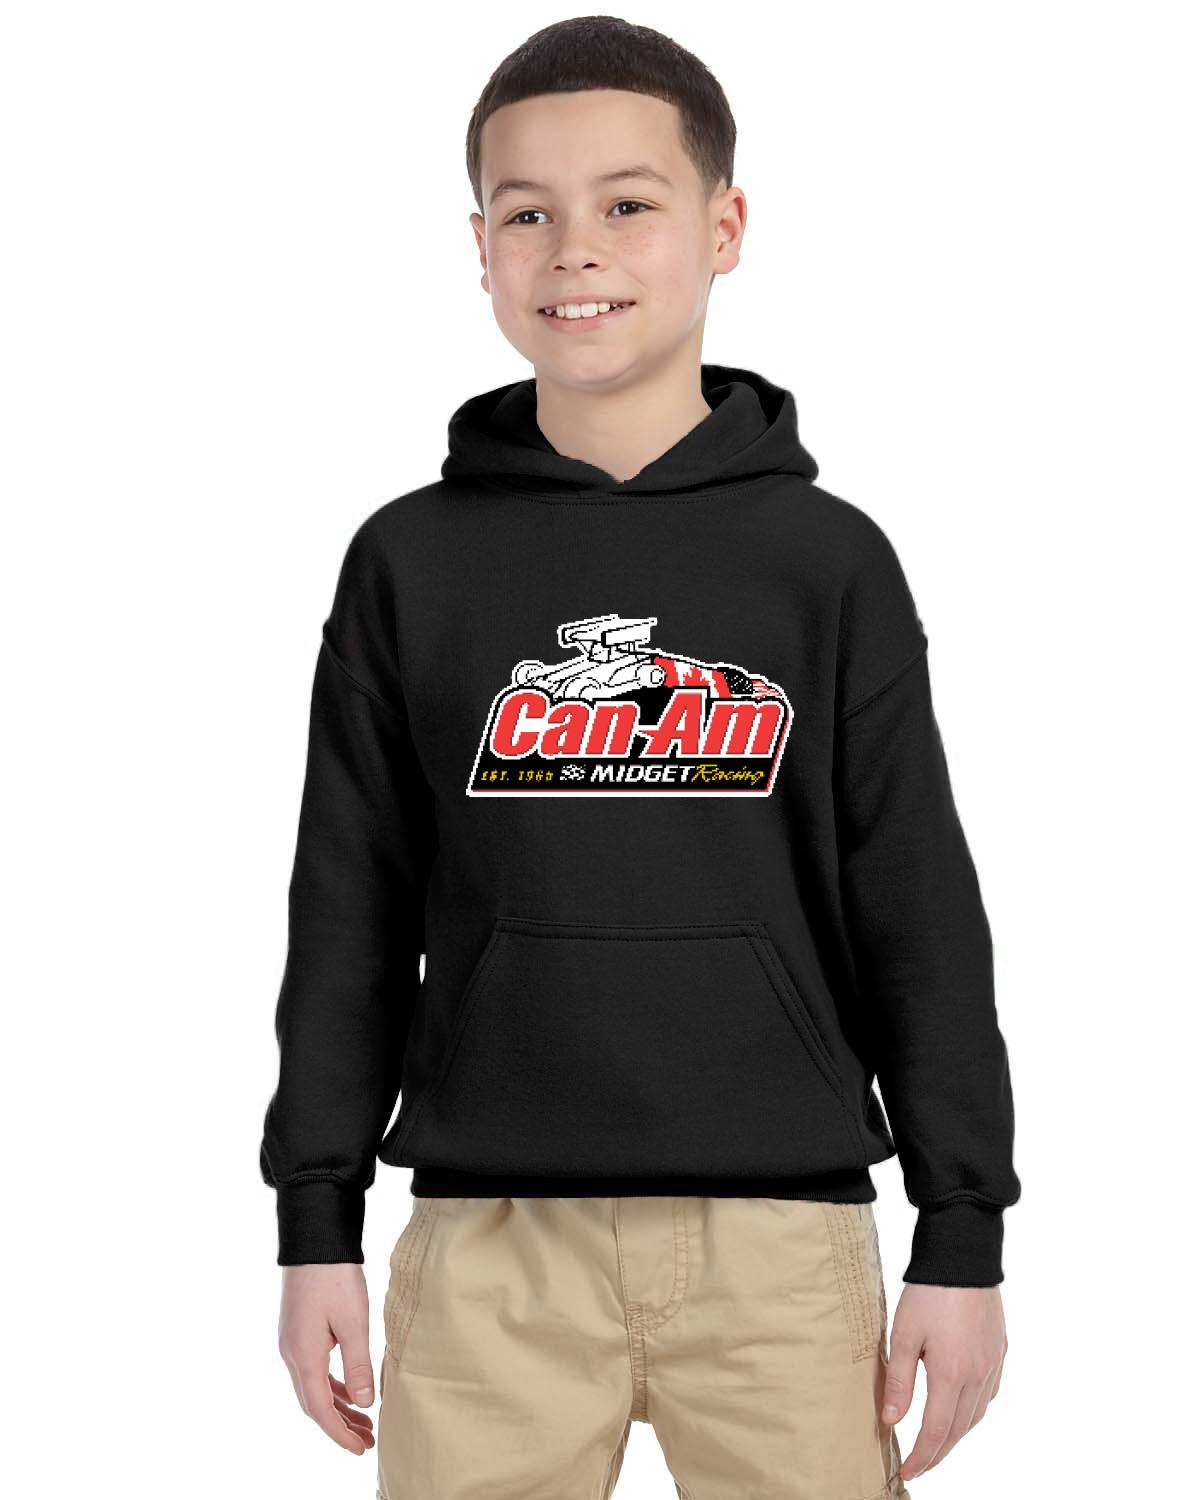 Can-Am Midget Racing Kid's Hoodie